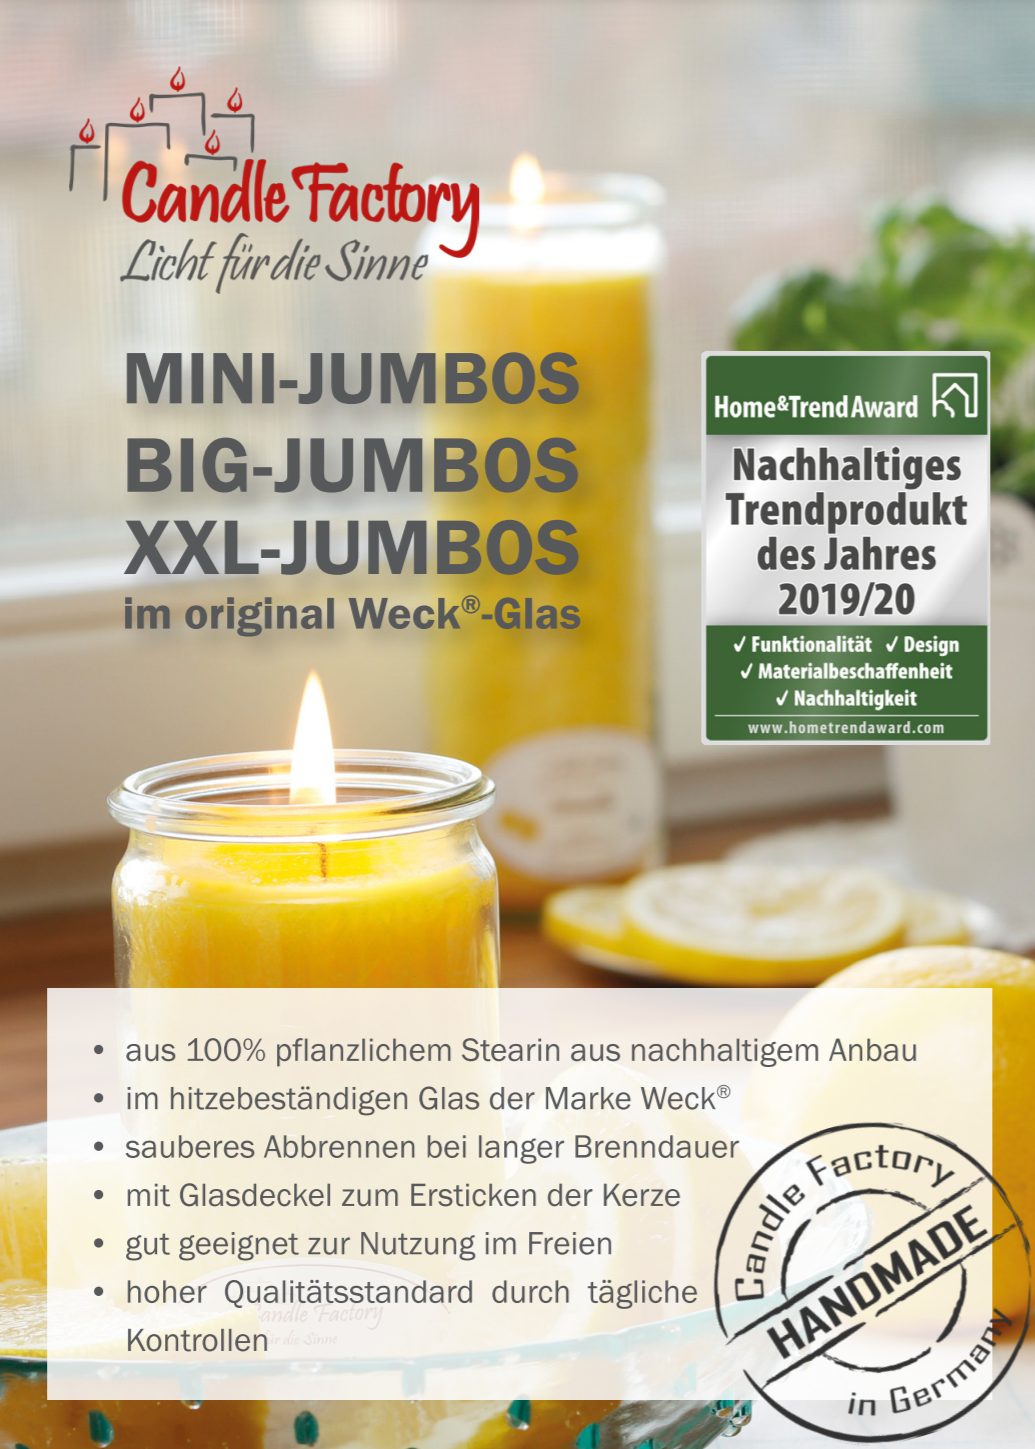 Candle Factory Mini-Jumbo Himbeereis